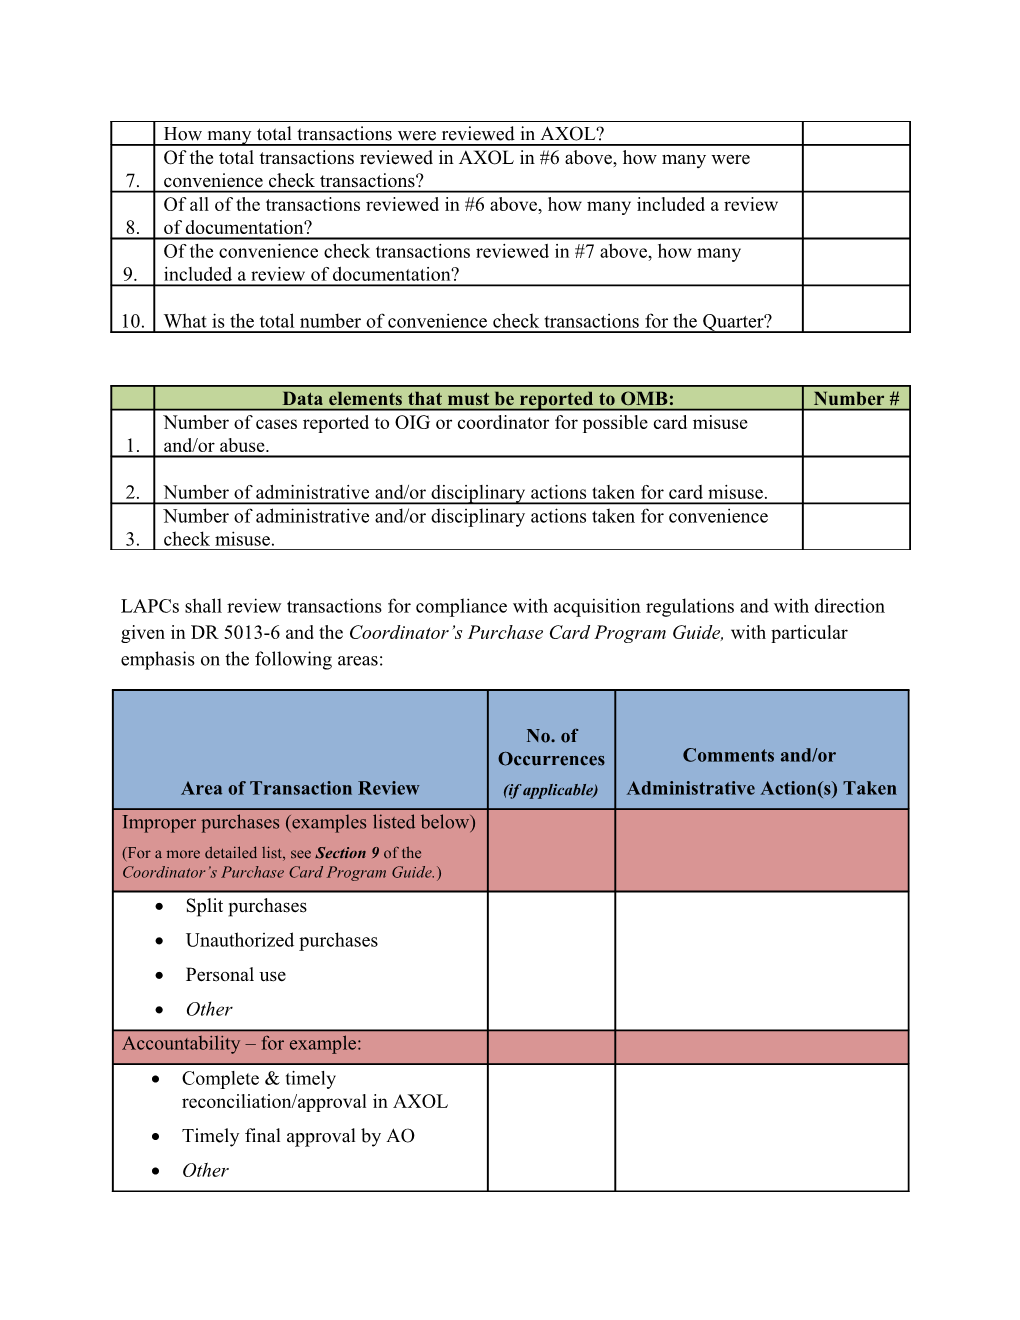 LAPC Quarterly Review Checklist